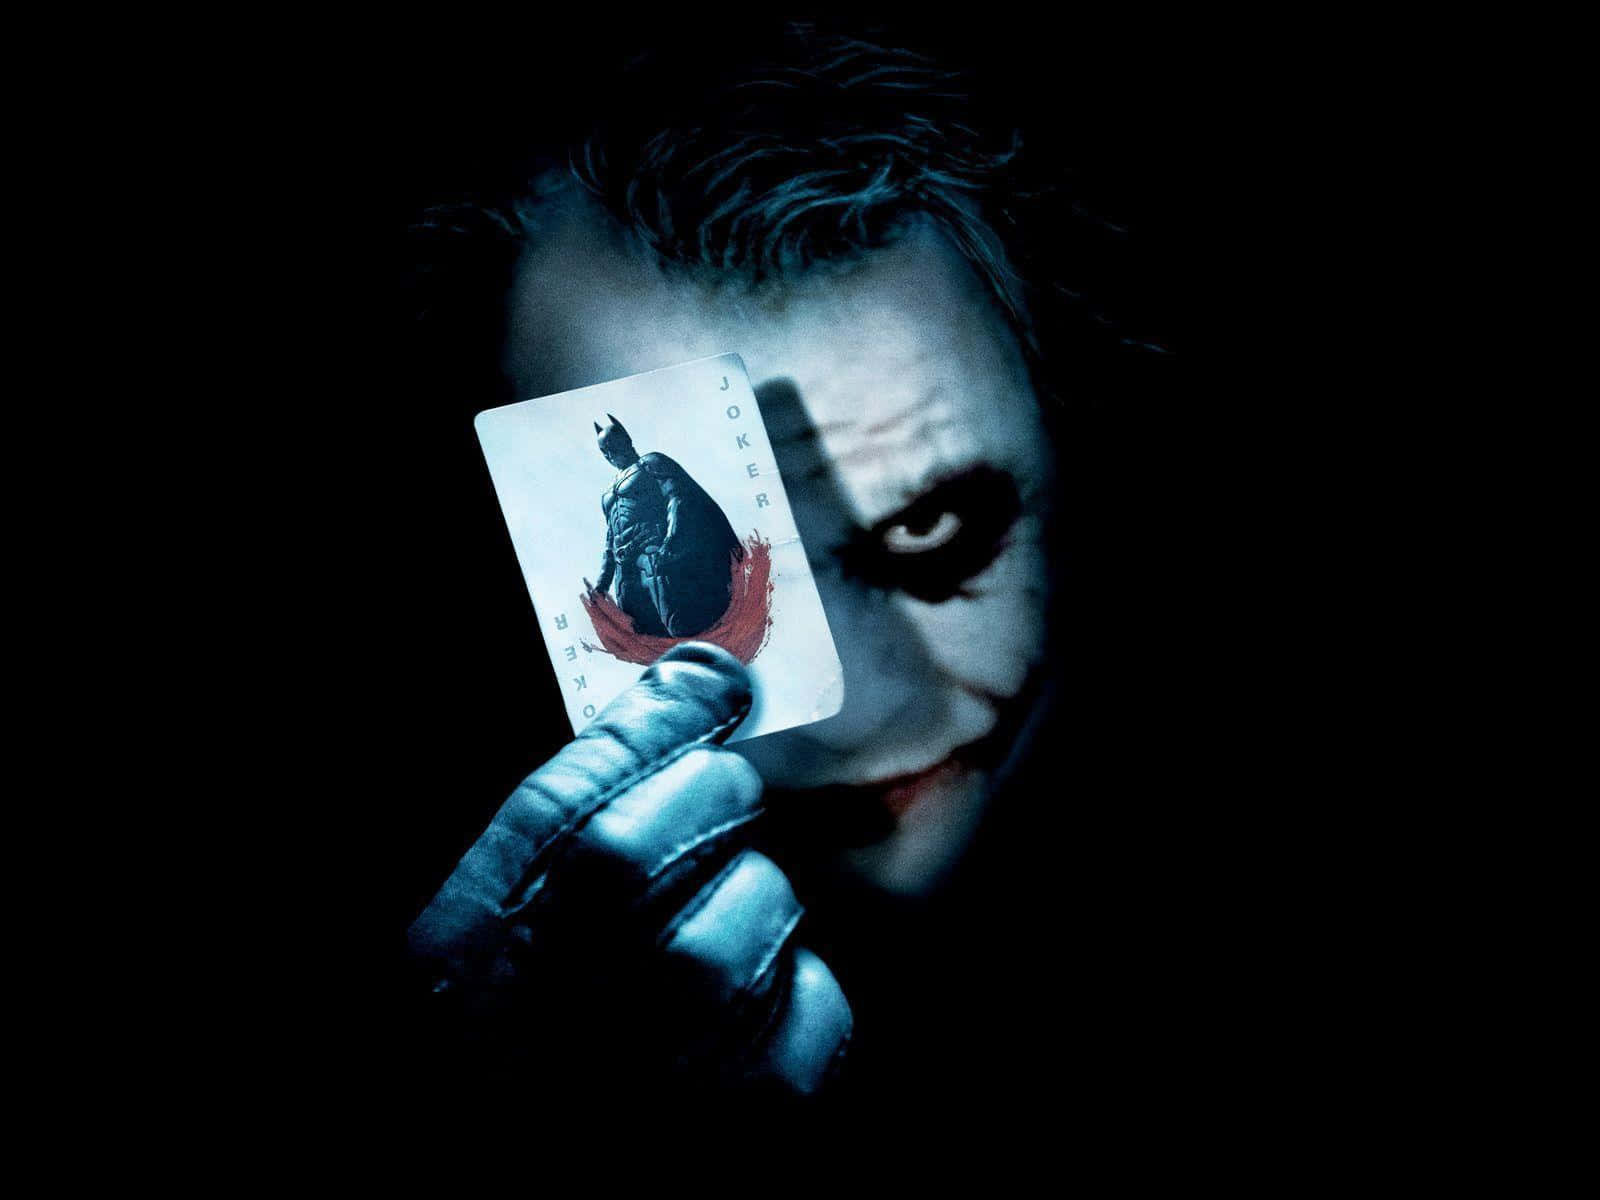 Creepy Dangerous Joker Batman Card Wallpaper